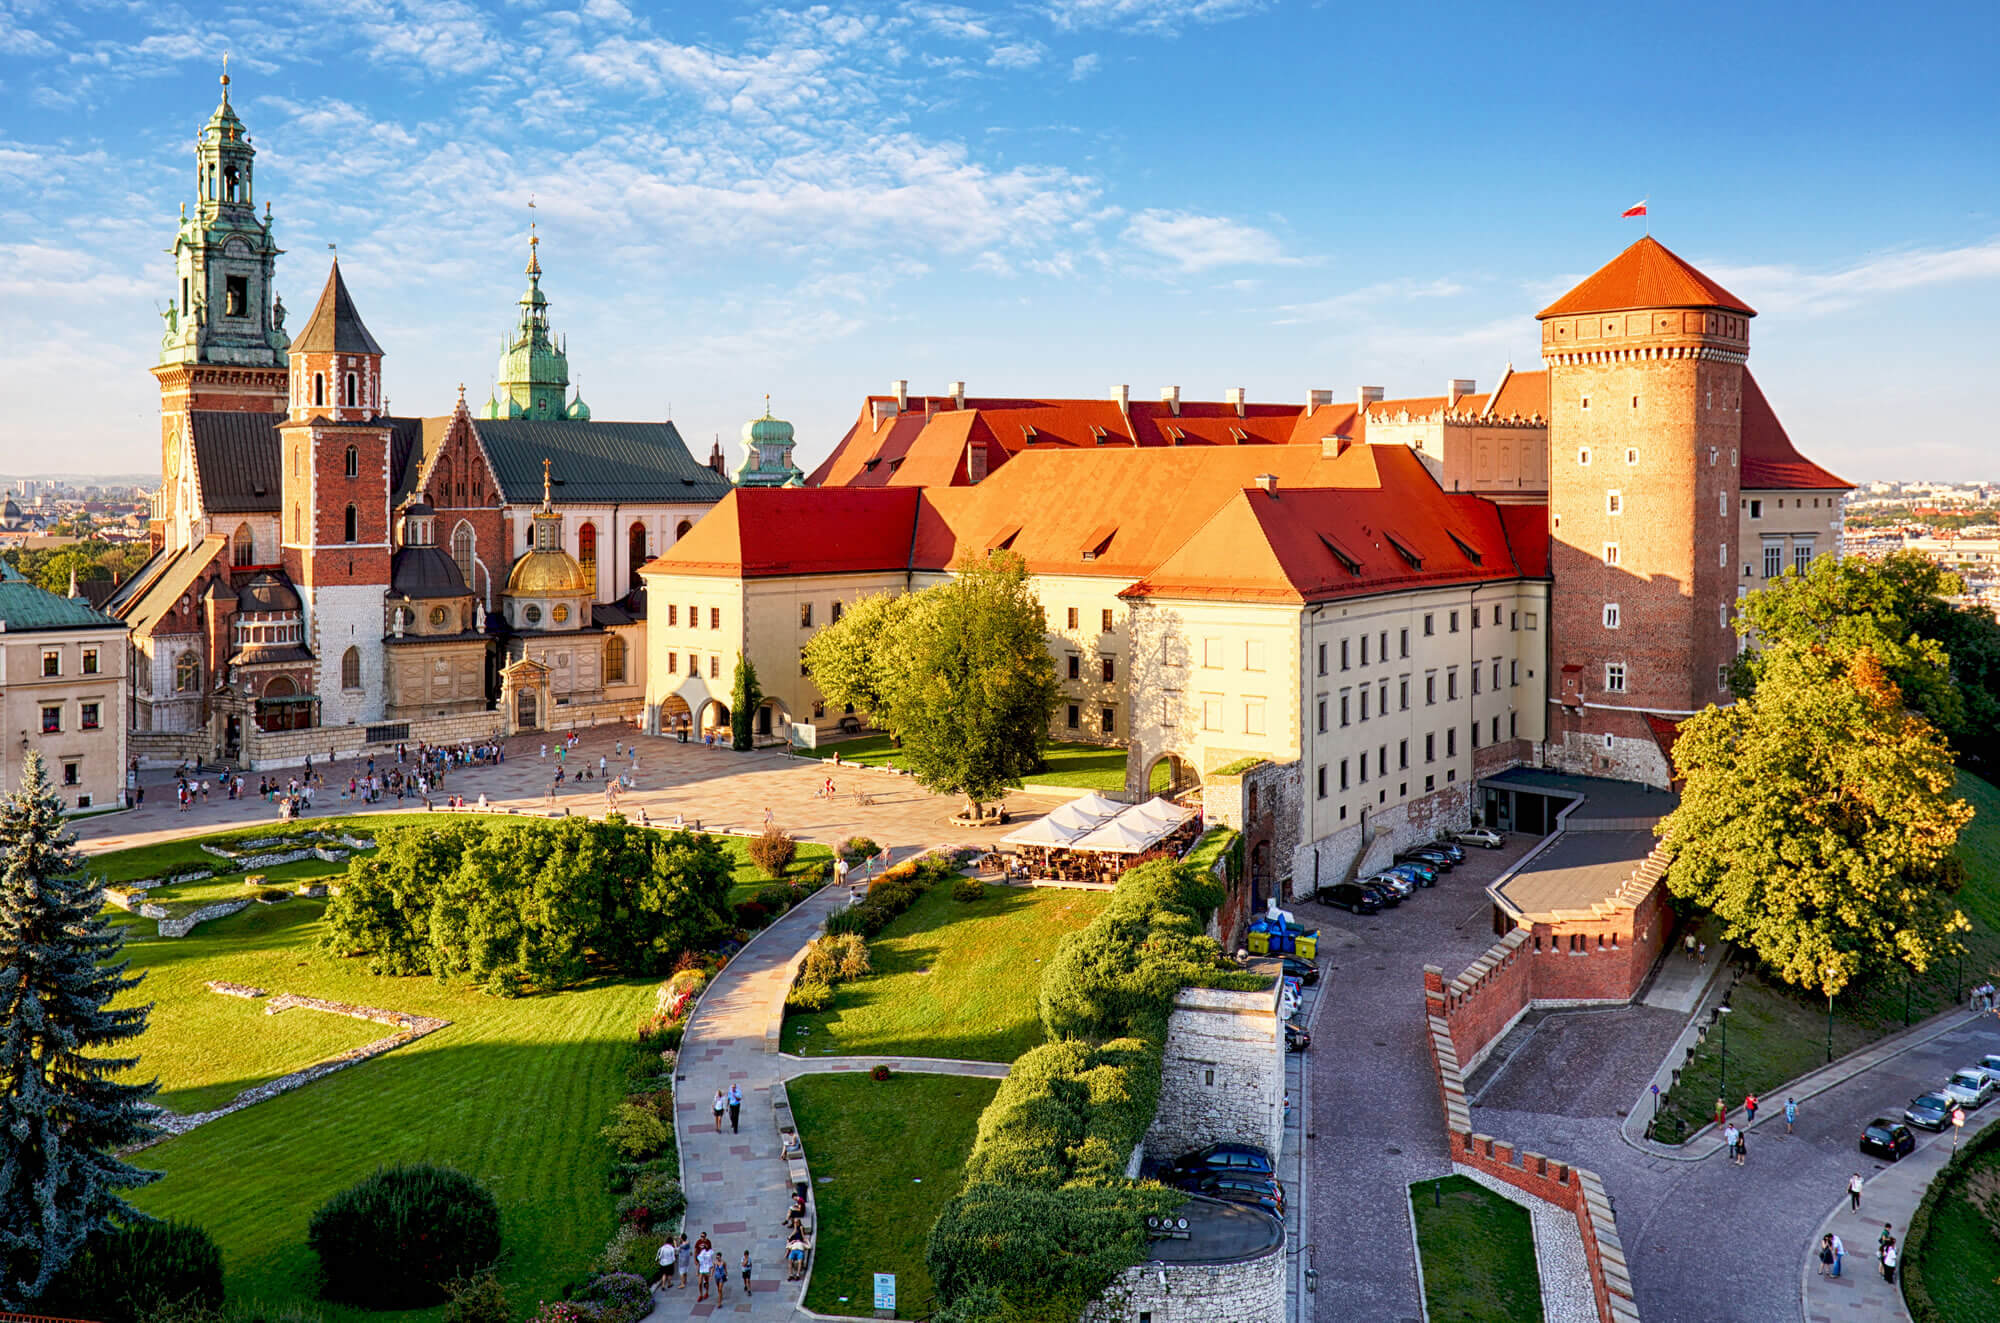 Krakow Wawel Castle